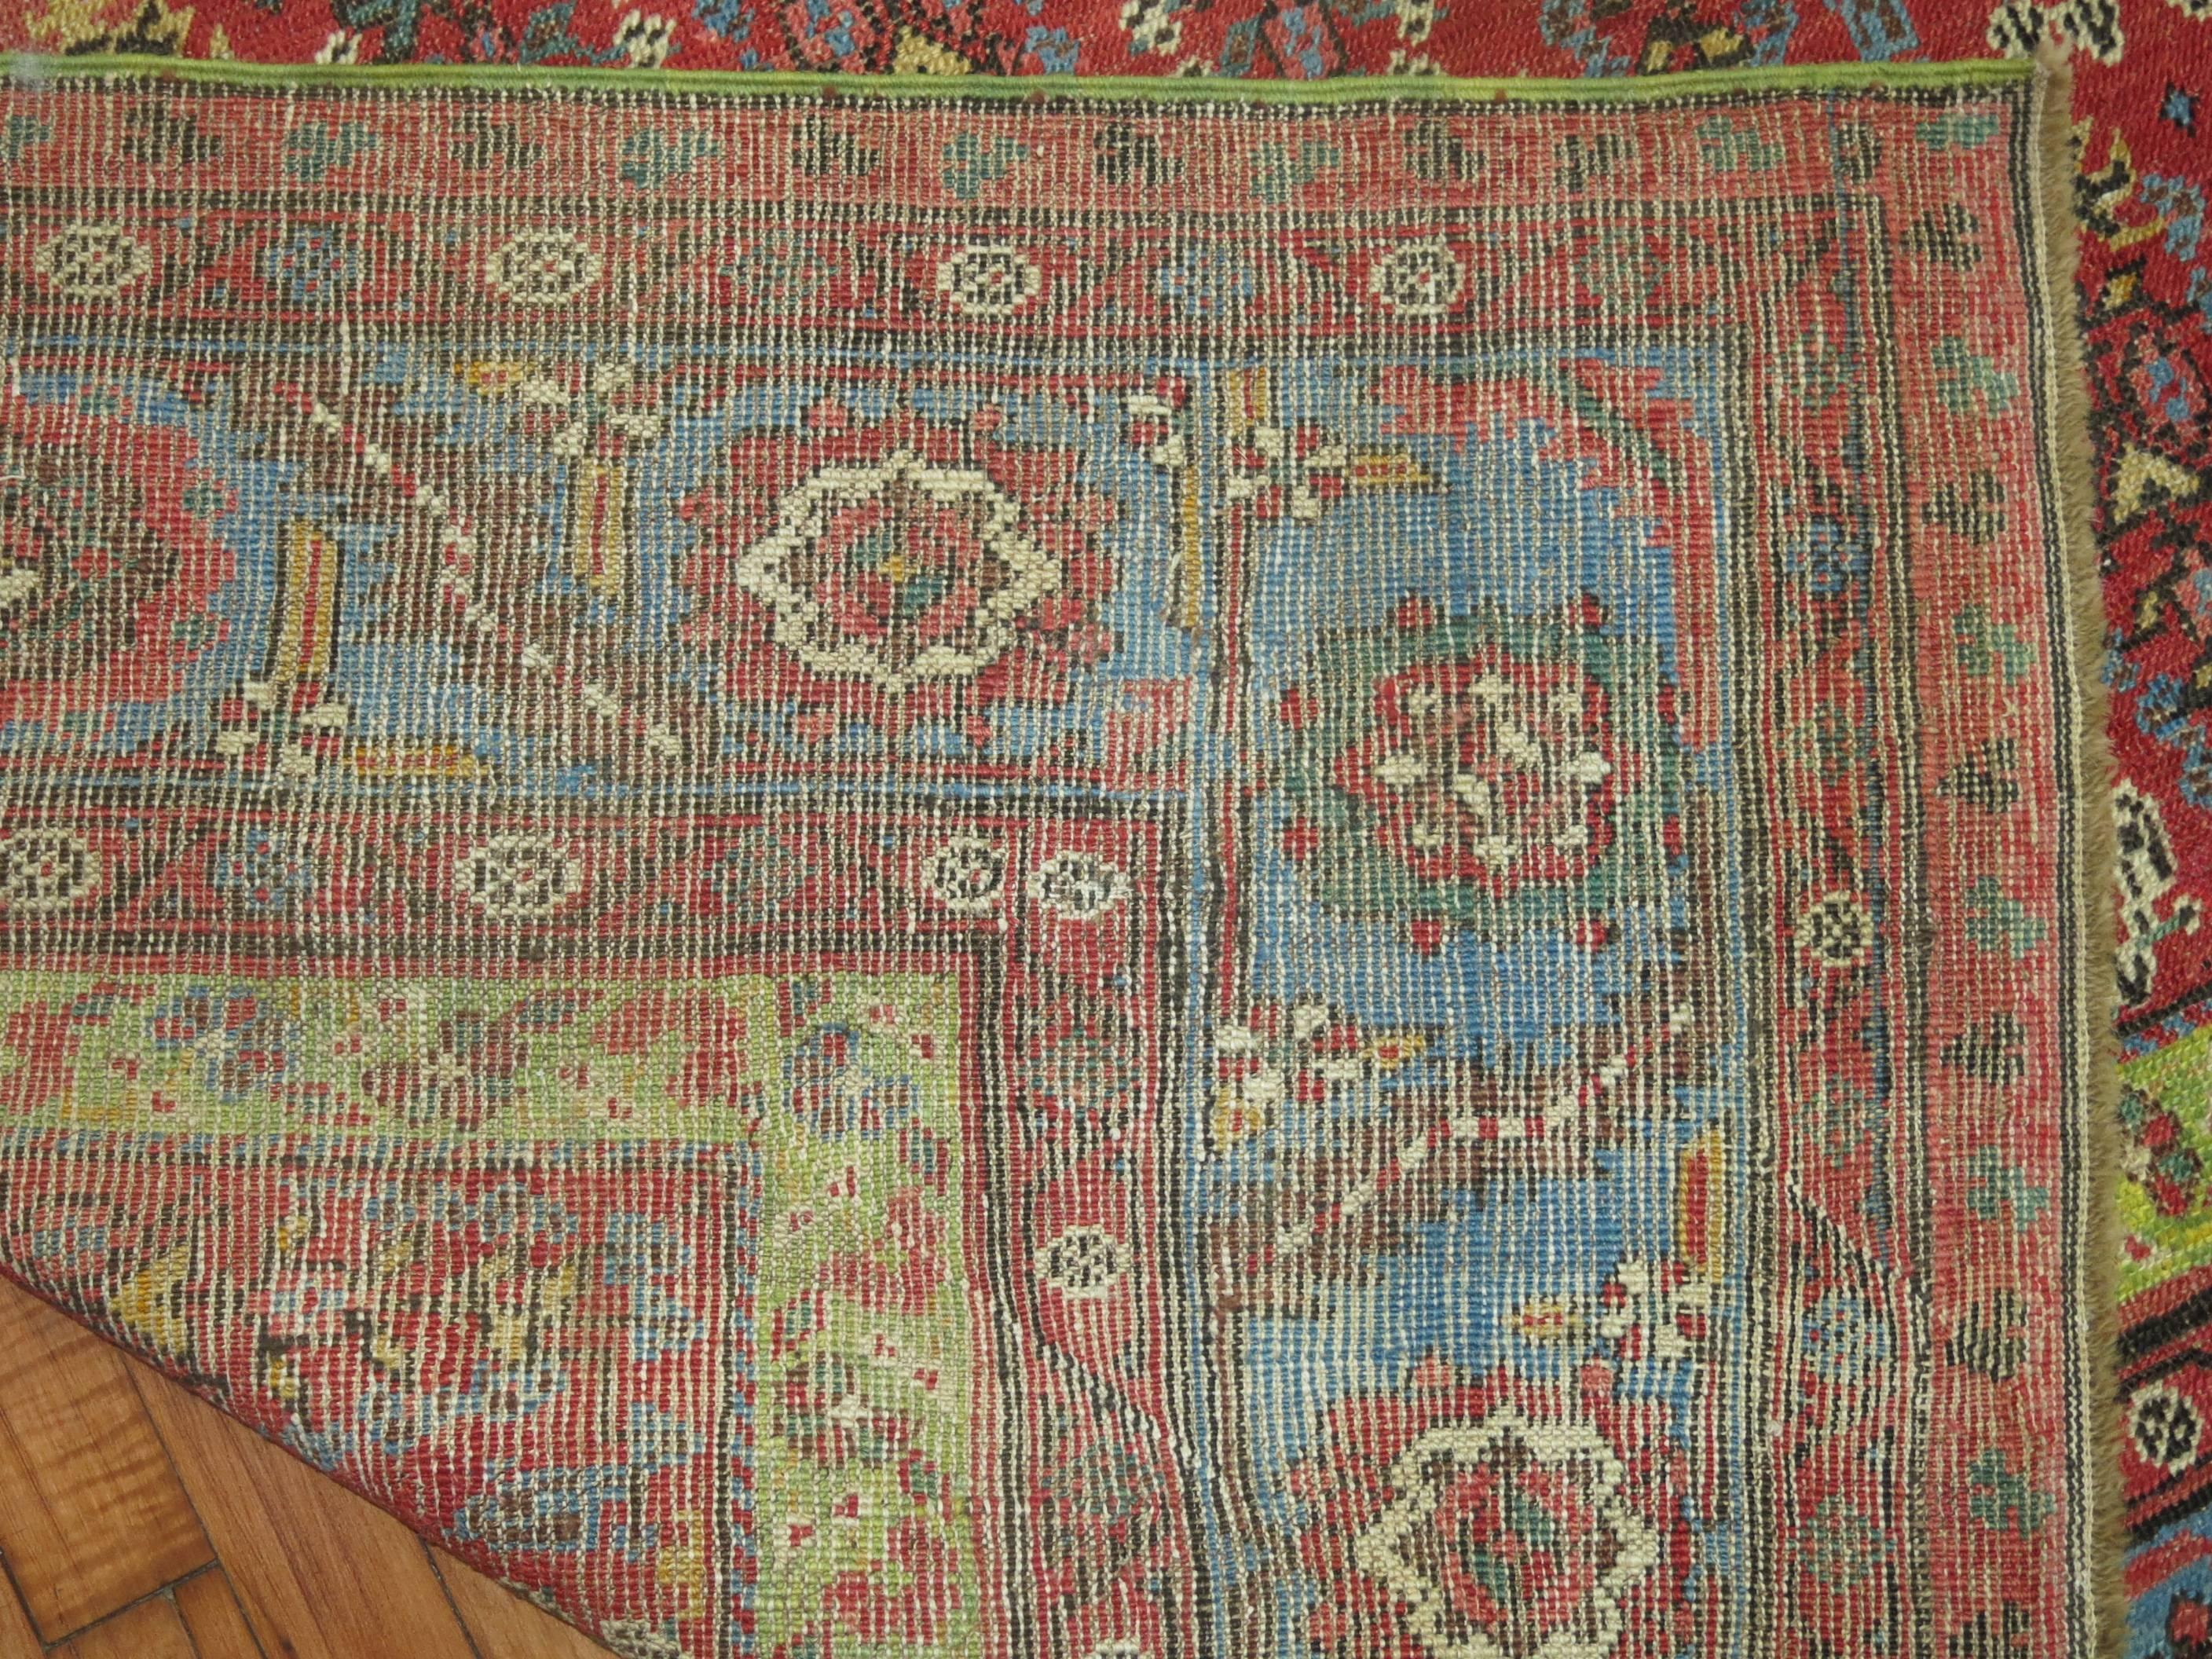 Persian Antique Bakshaish Gallery Carpet For Sale